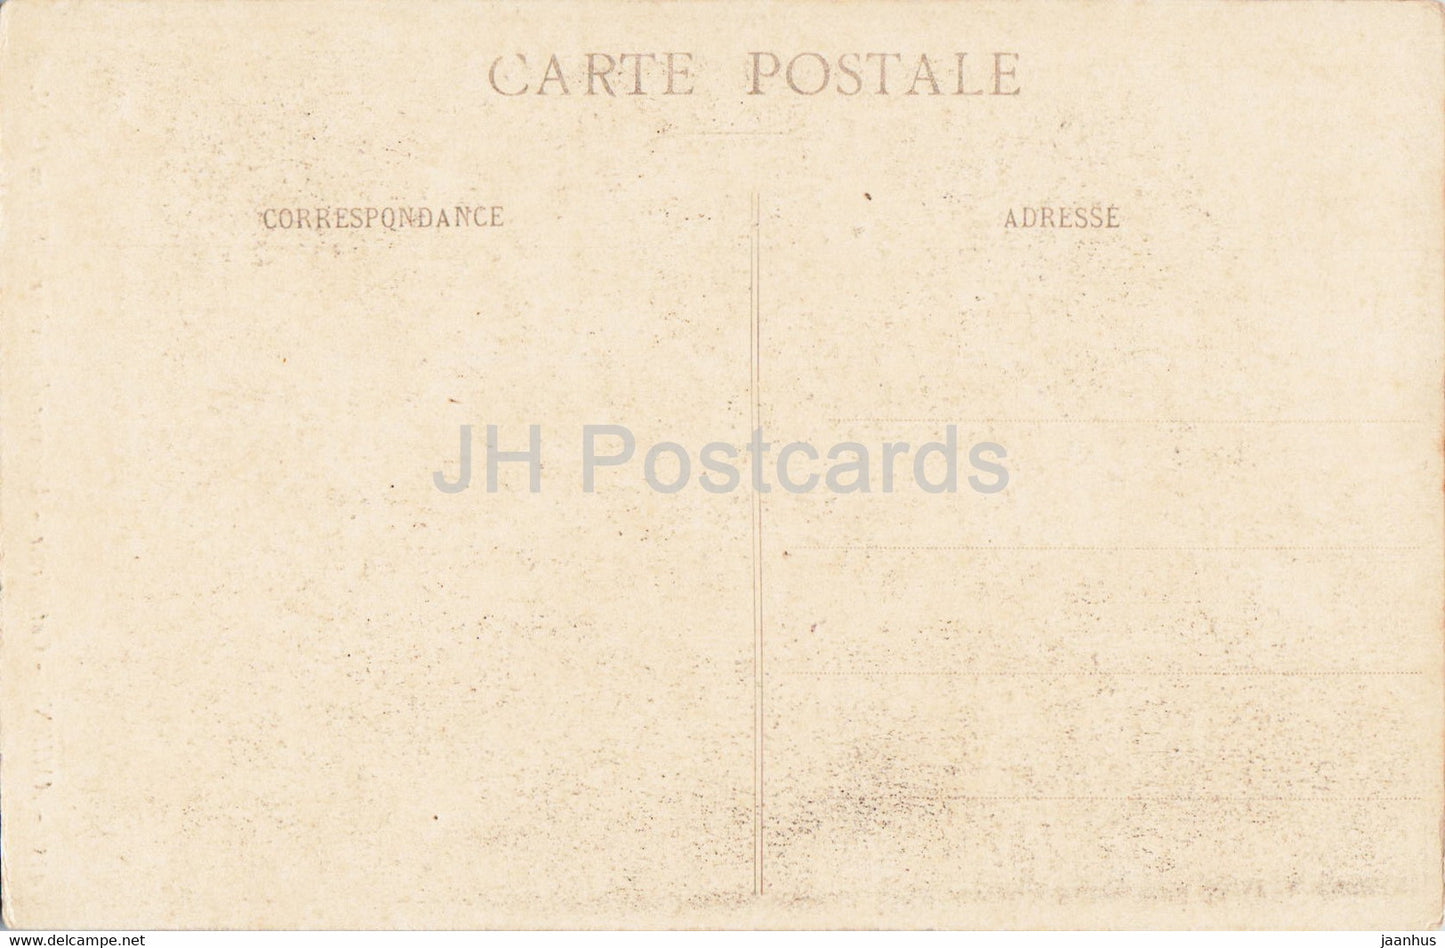 Amiens - Cathédrale - Une vue d'intérieur - cathédrale - 435 - carte postale ancienne - France - inutilisée